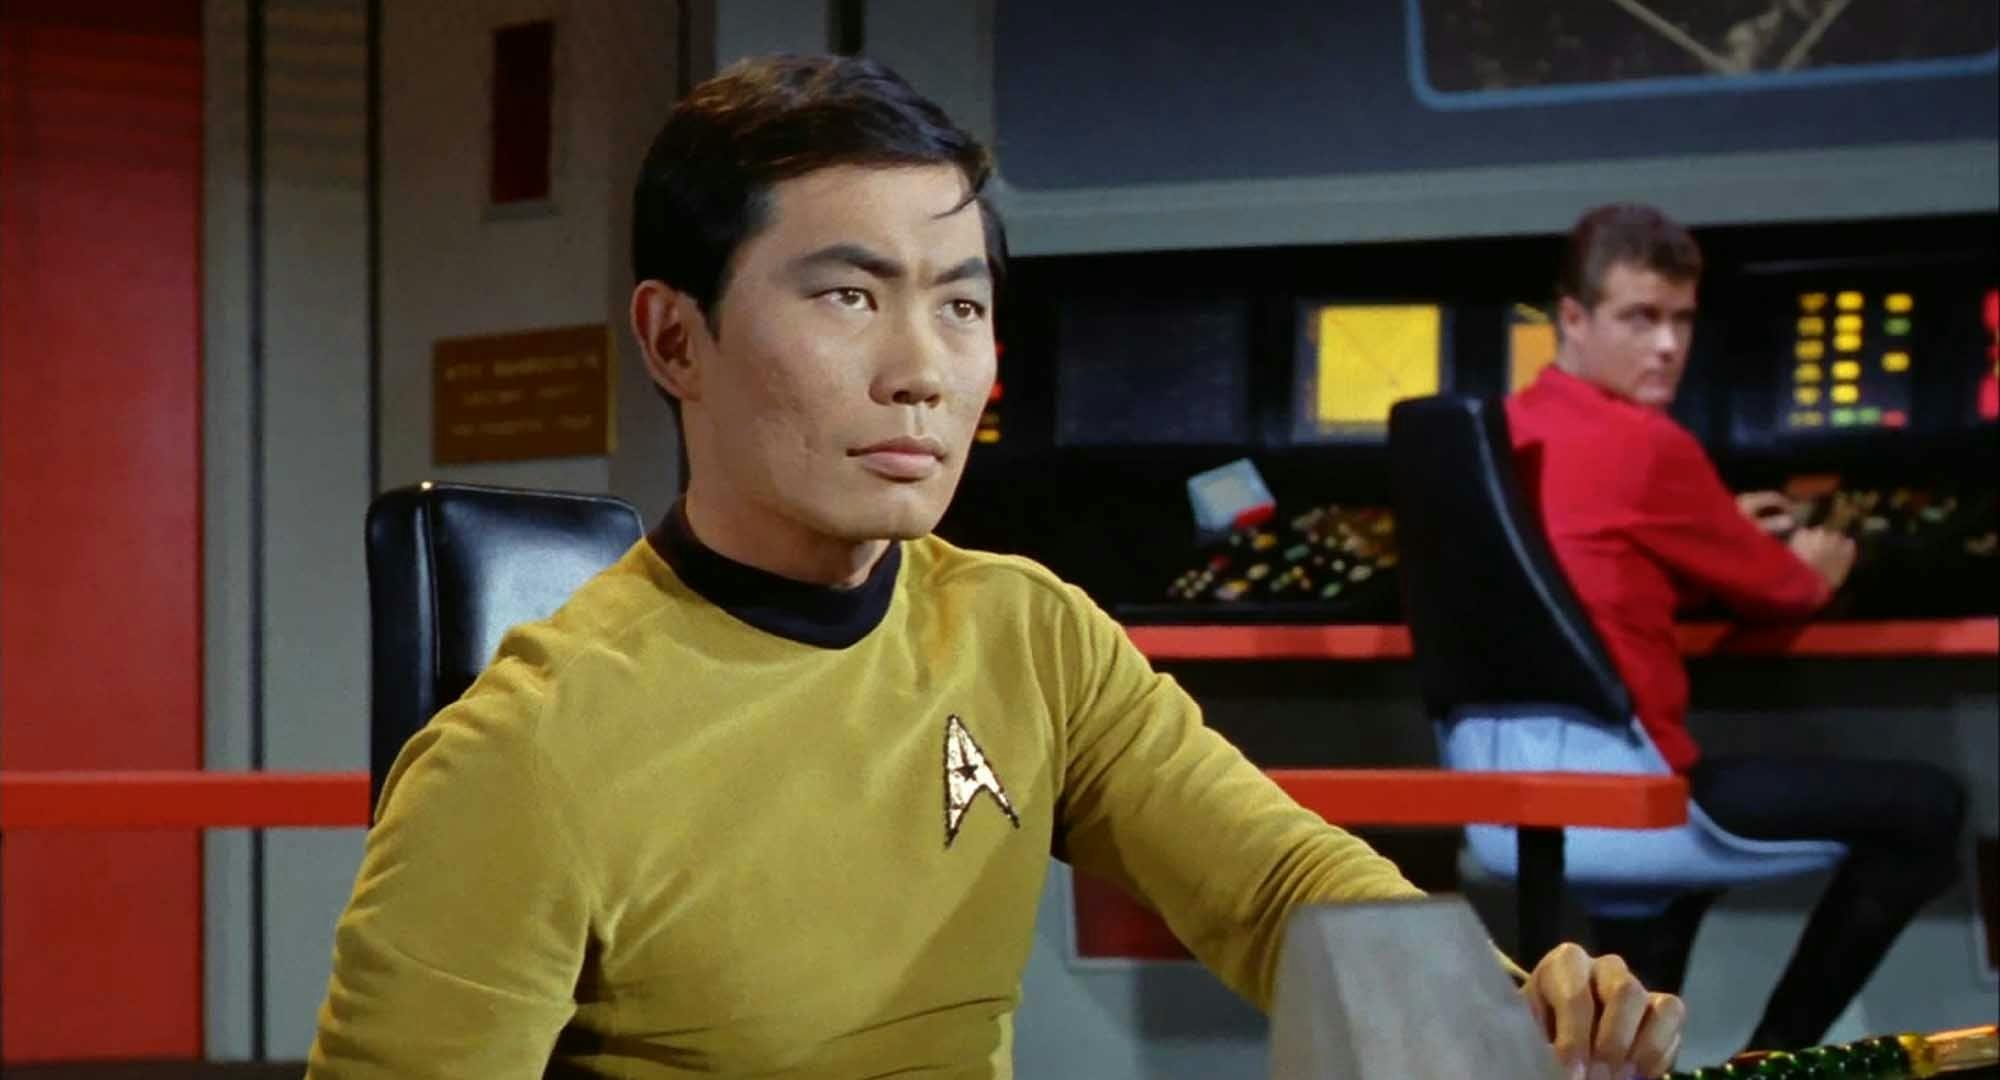 Mr. Sulu